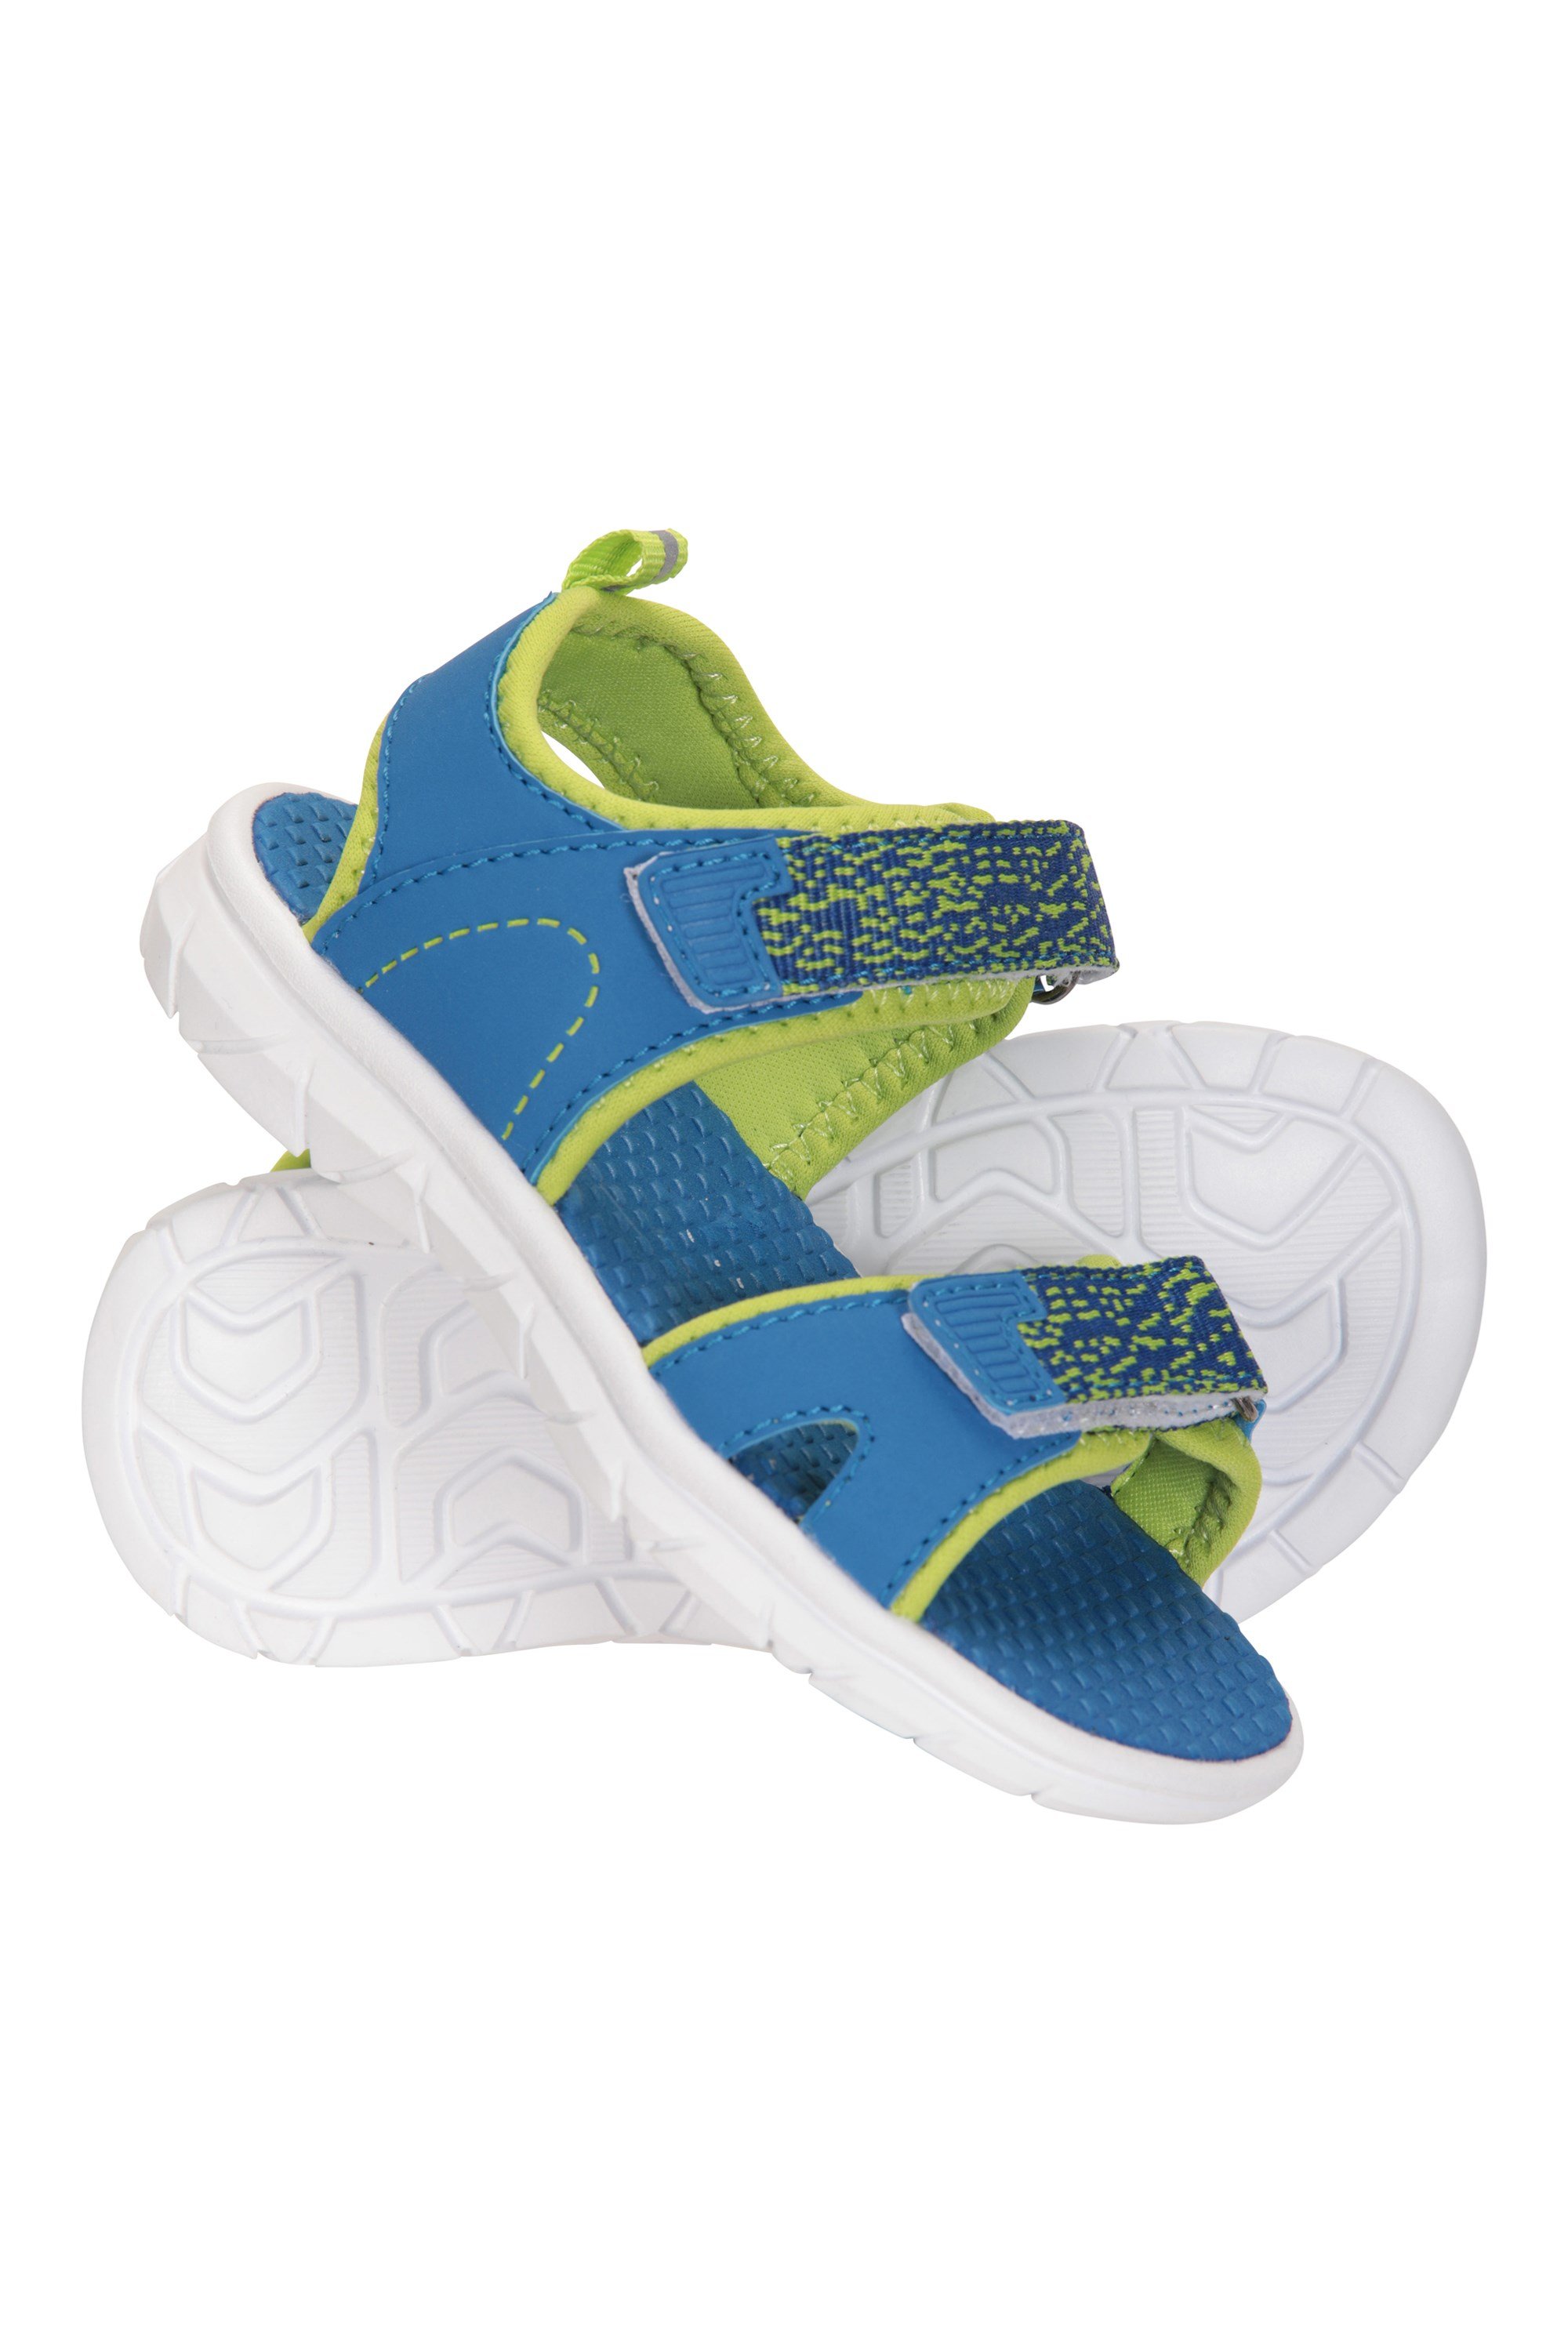 Tide Toddler Sandals - Charcoal